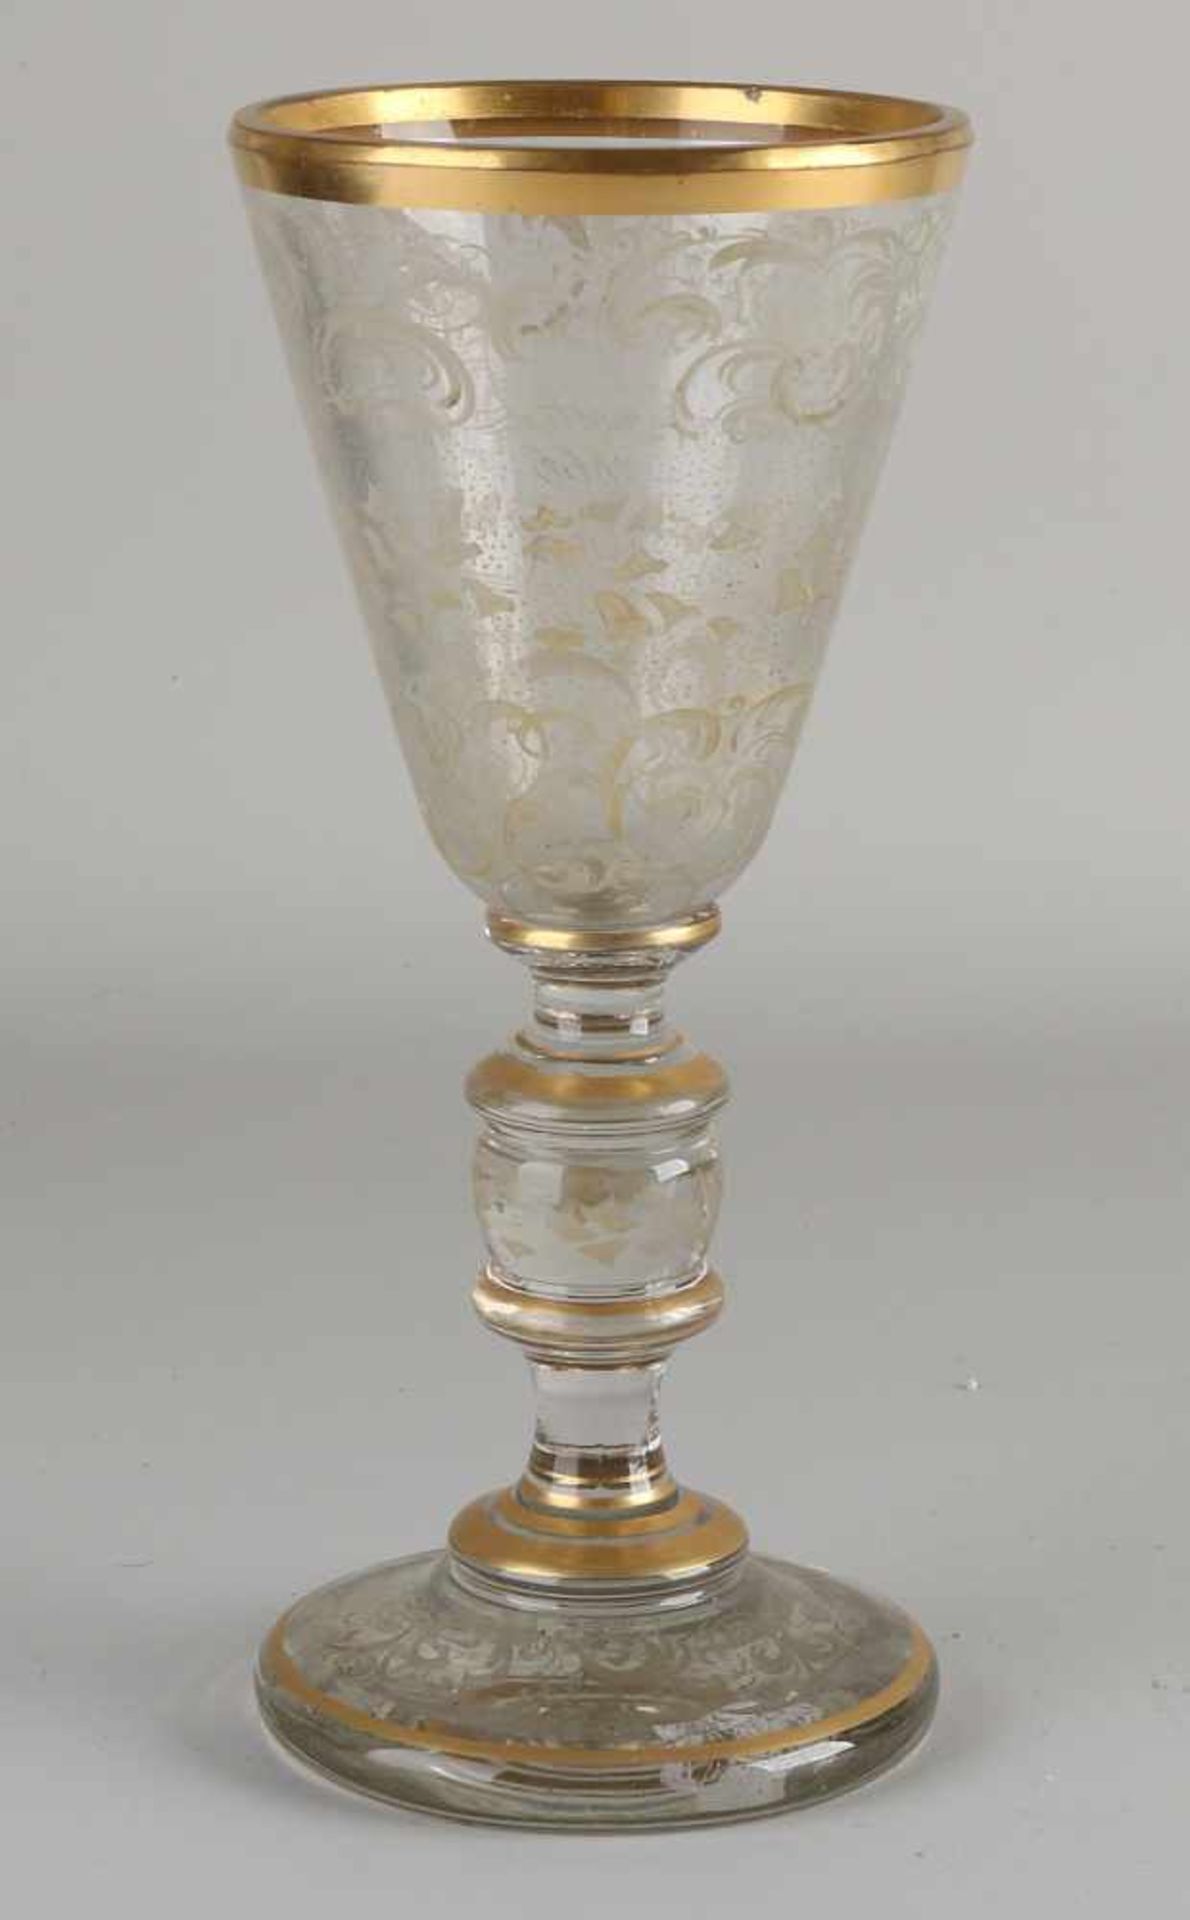 Großes graviertes Becherglas aus dem 19. Jahrhundert mit Roccailles / Gold und Textdekoration ' - Bild 2 aus 2